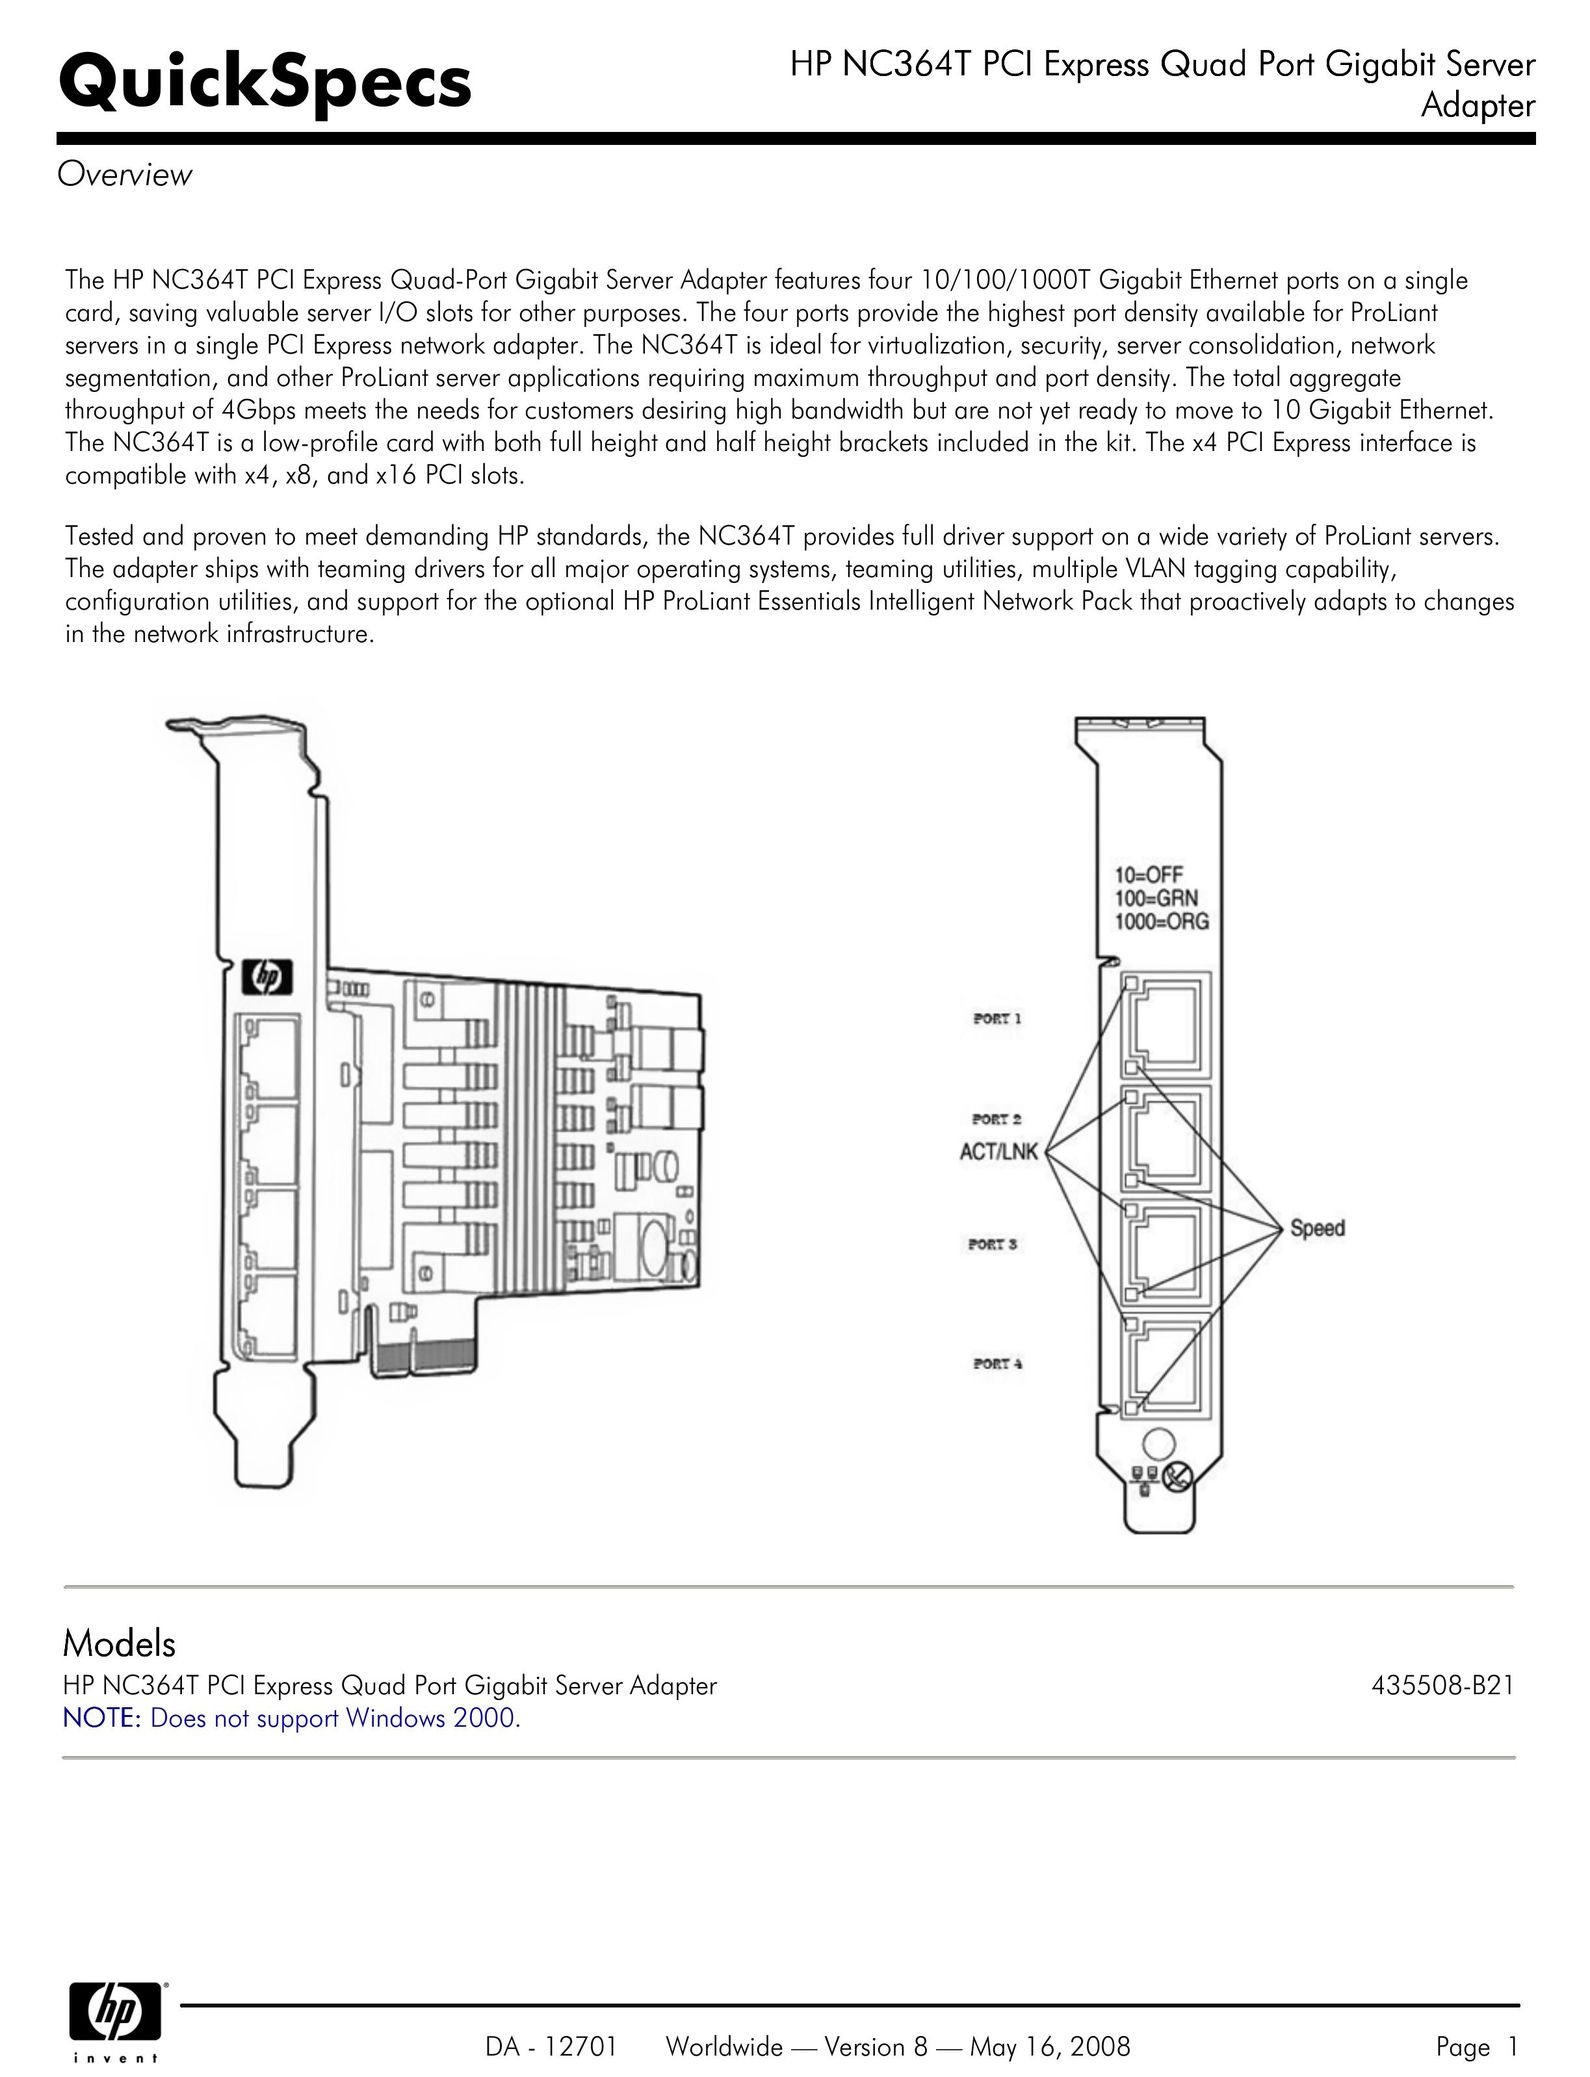 HP (Hewlett-Packard) 435508-B21 Computer Hardware User Manual